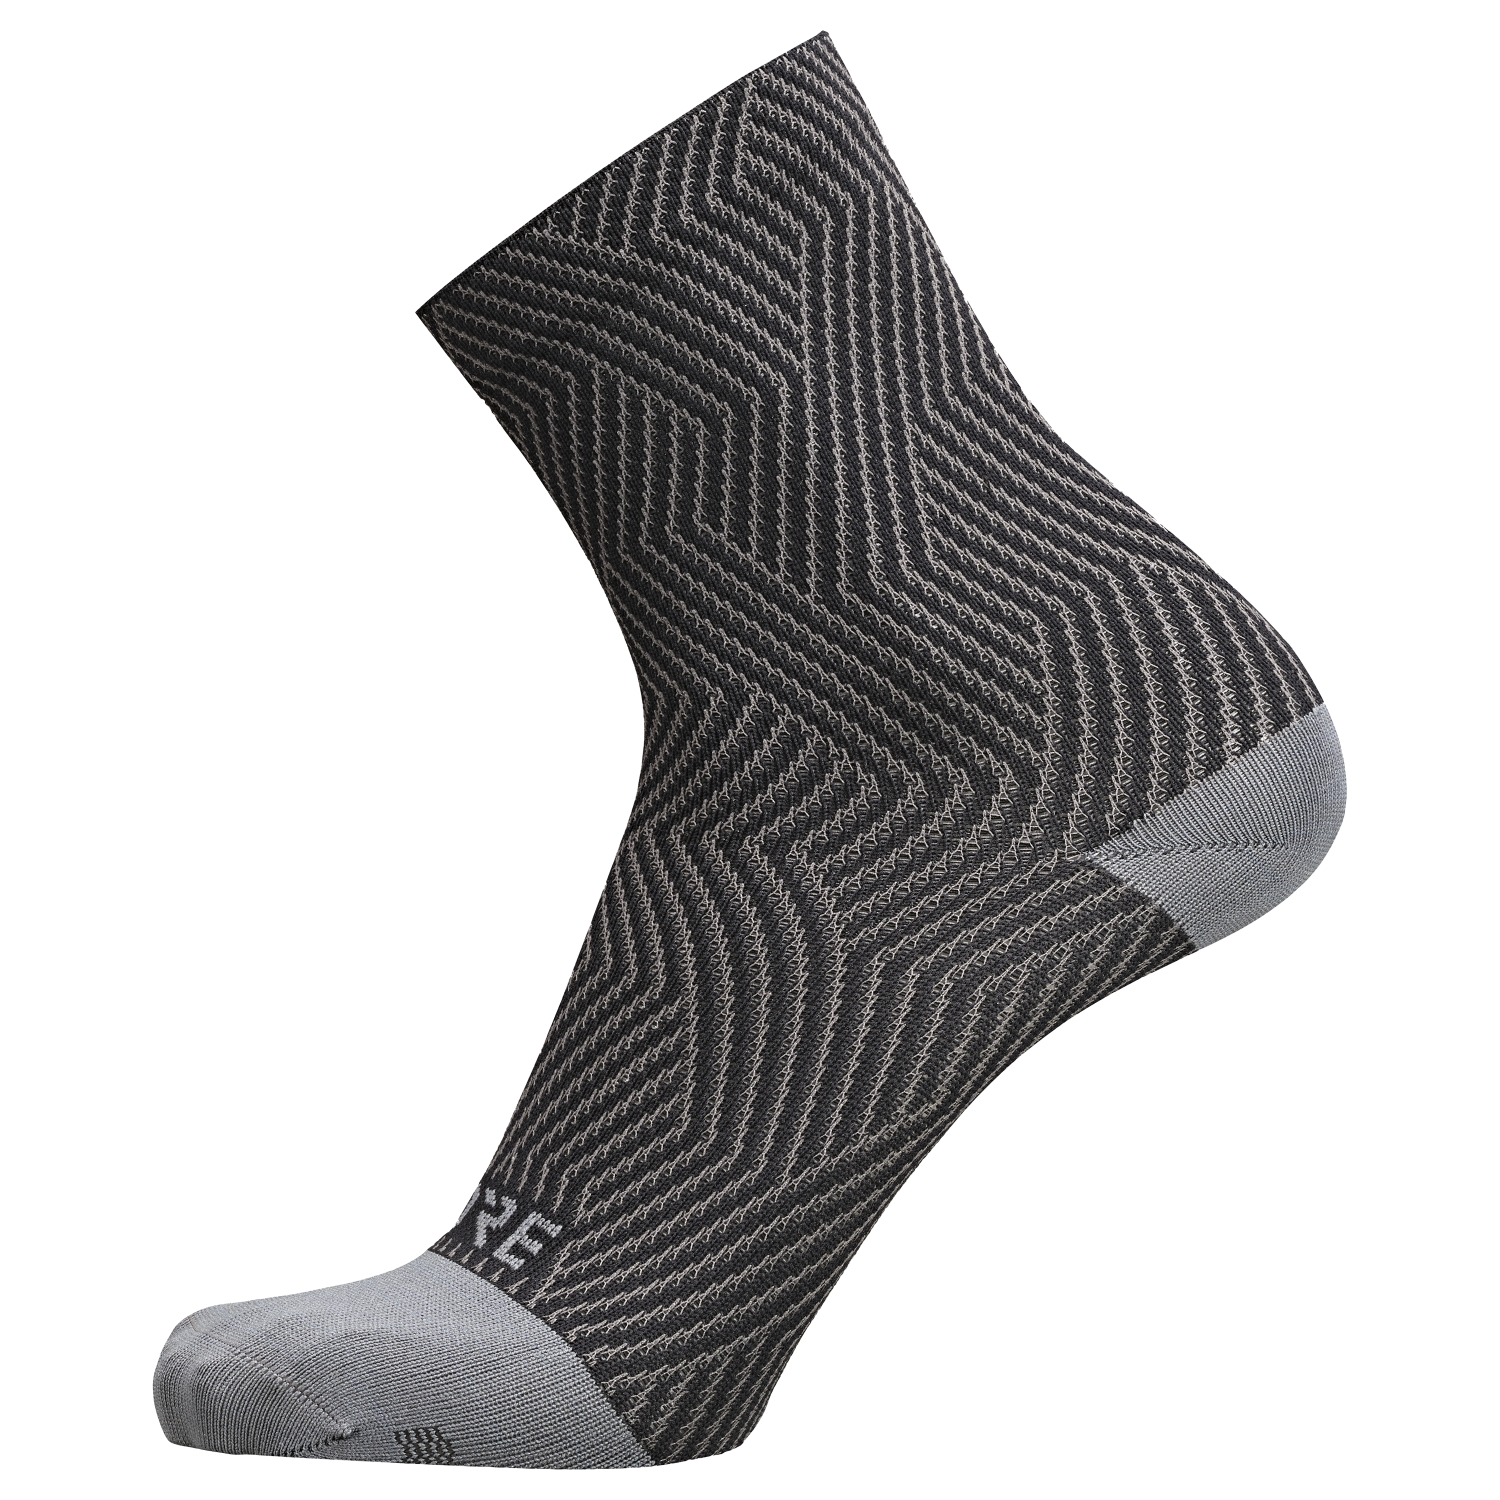 GOREWEAR C3 Mid Socks in Graphite Grey/Black | 10.5-12 | Moisture Wicking